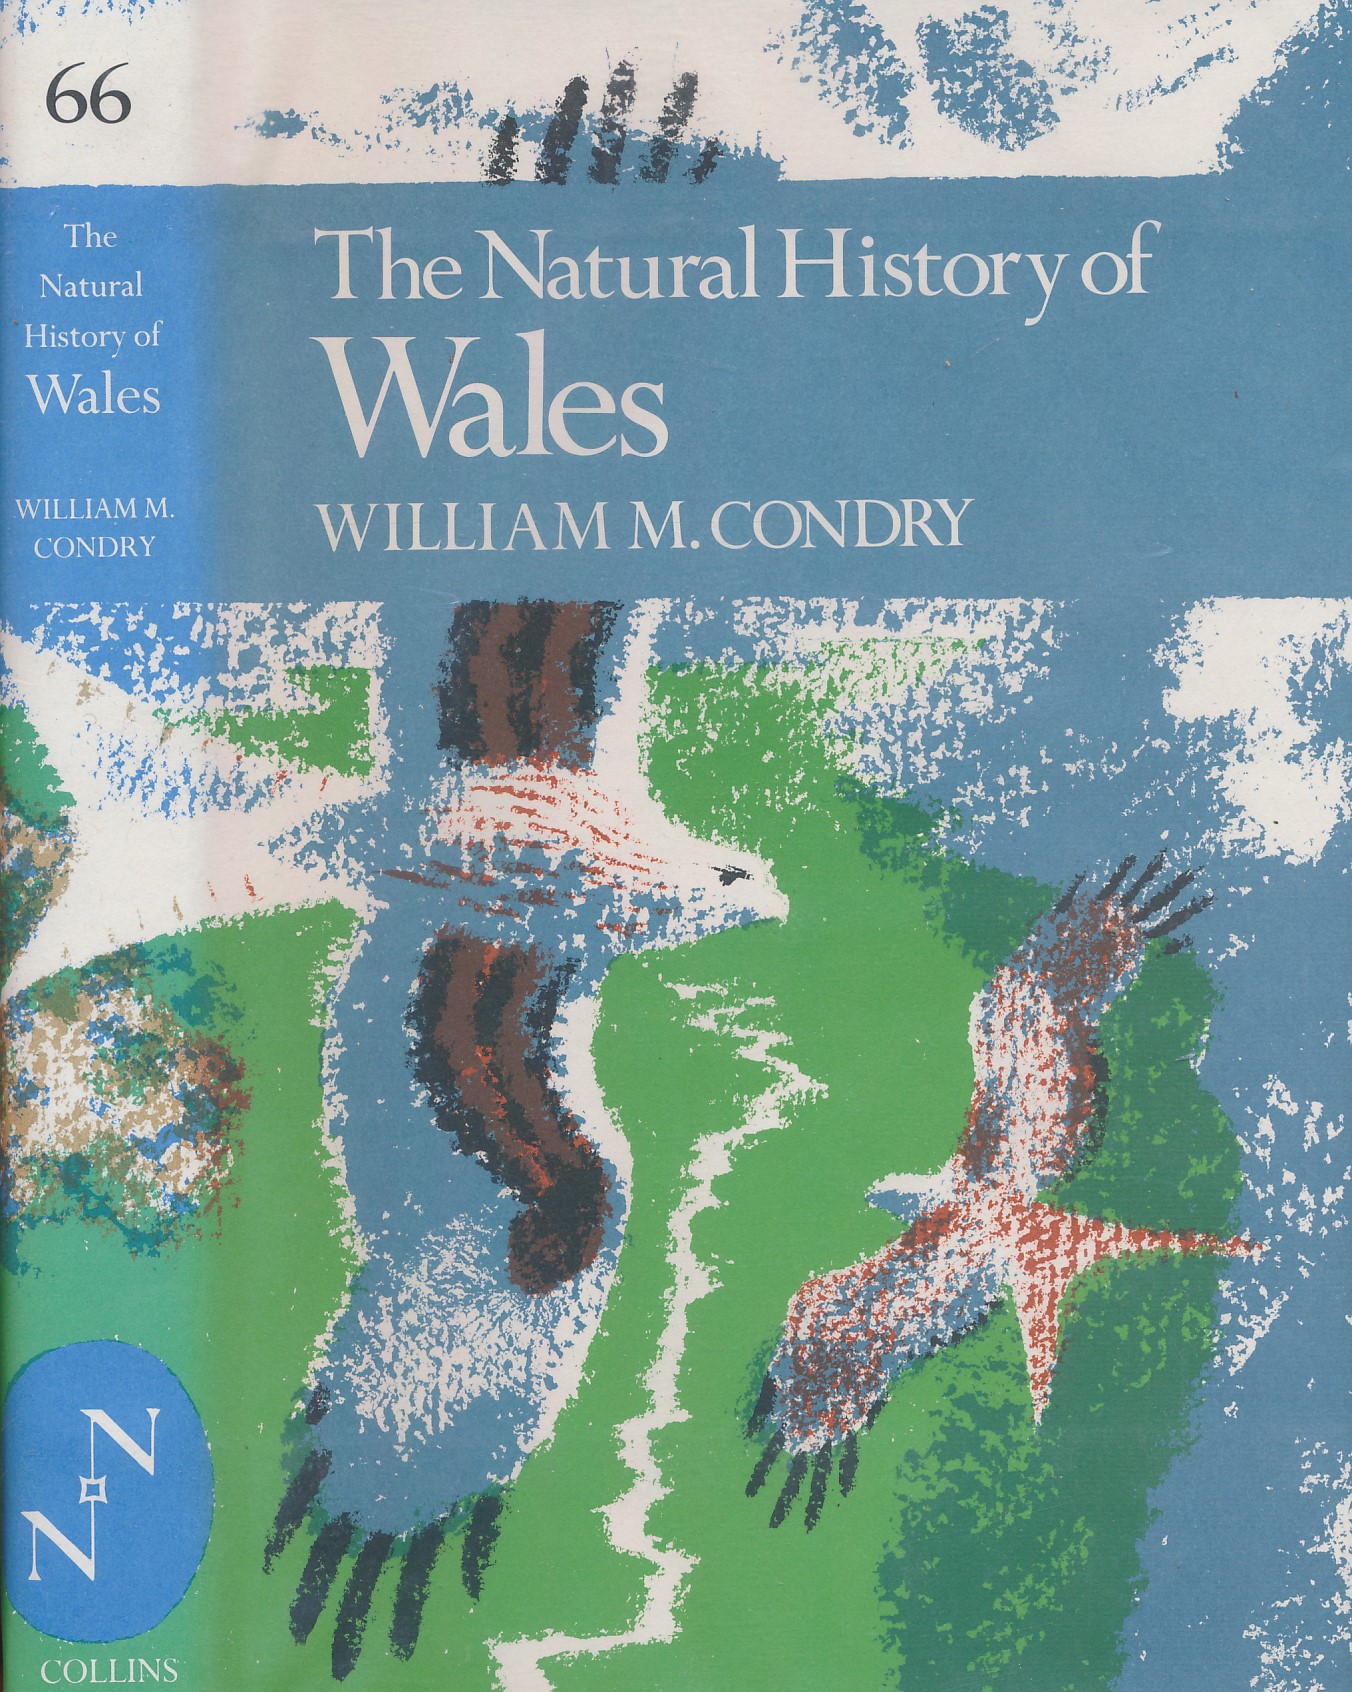 The Natural History of Wales. New Naturalist No 66.